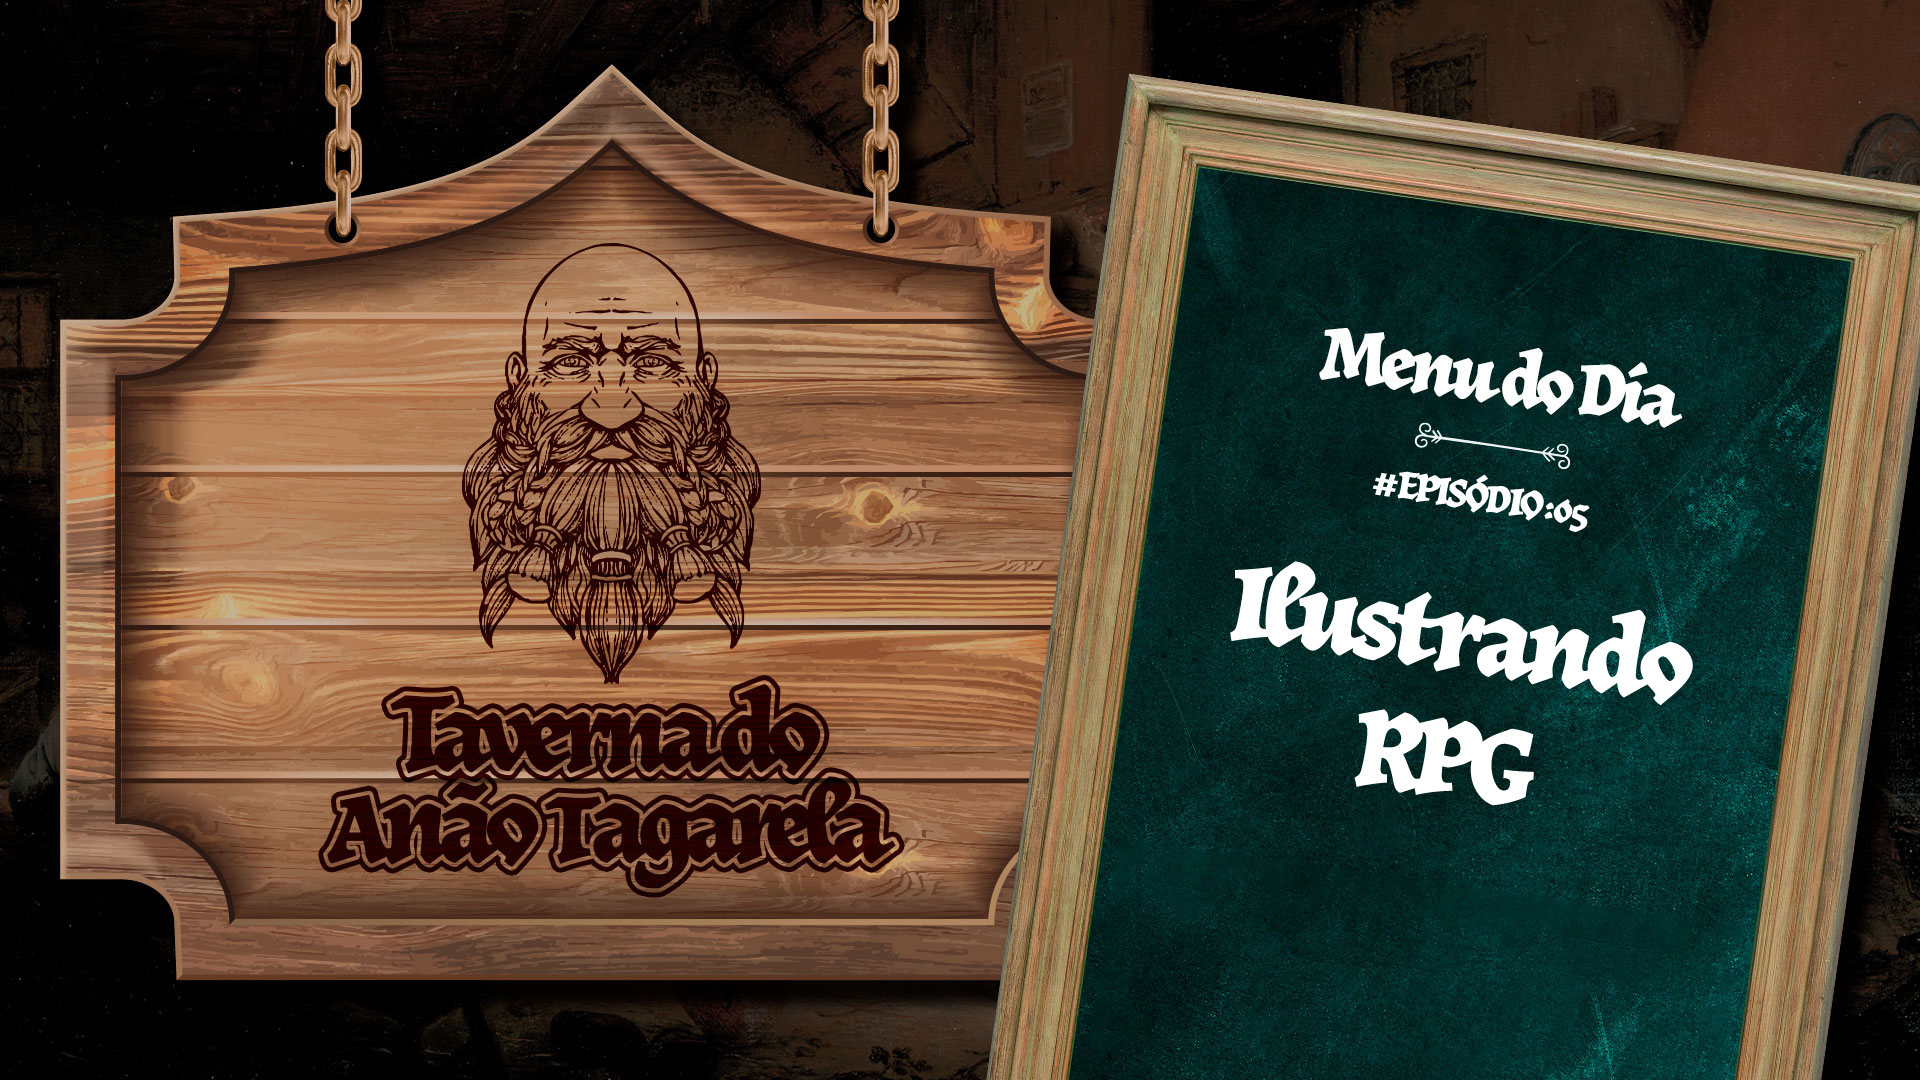 Ilustrando RPG – Taverna do Anão Tagarela #05